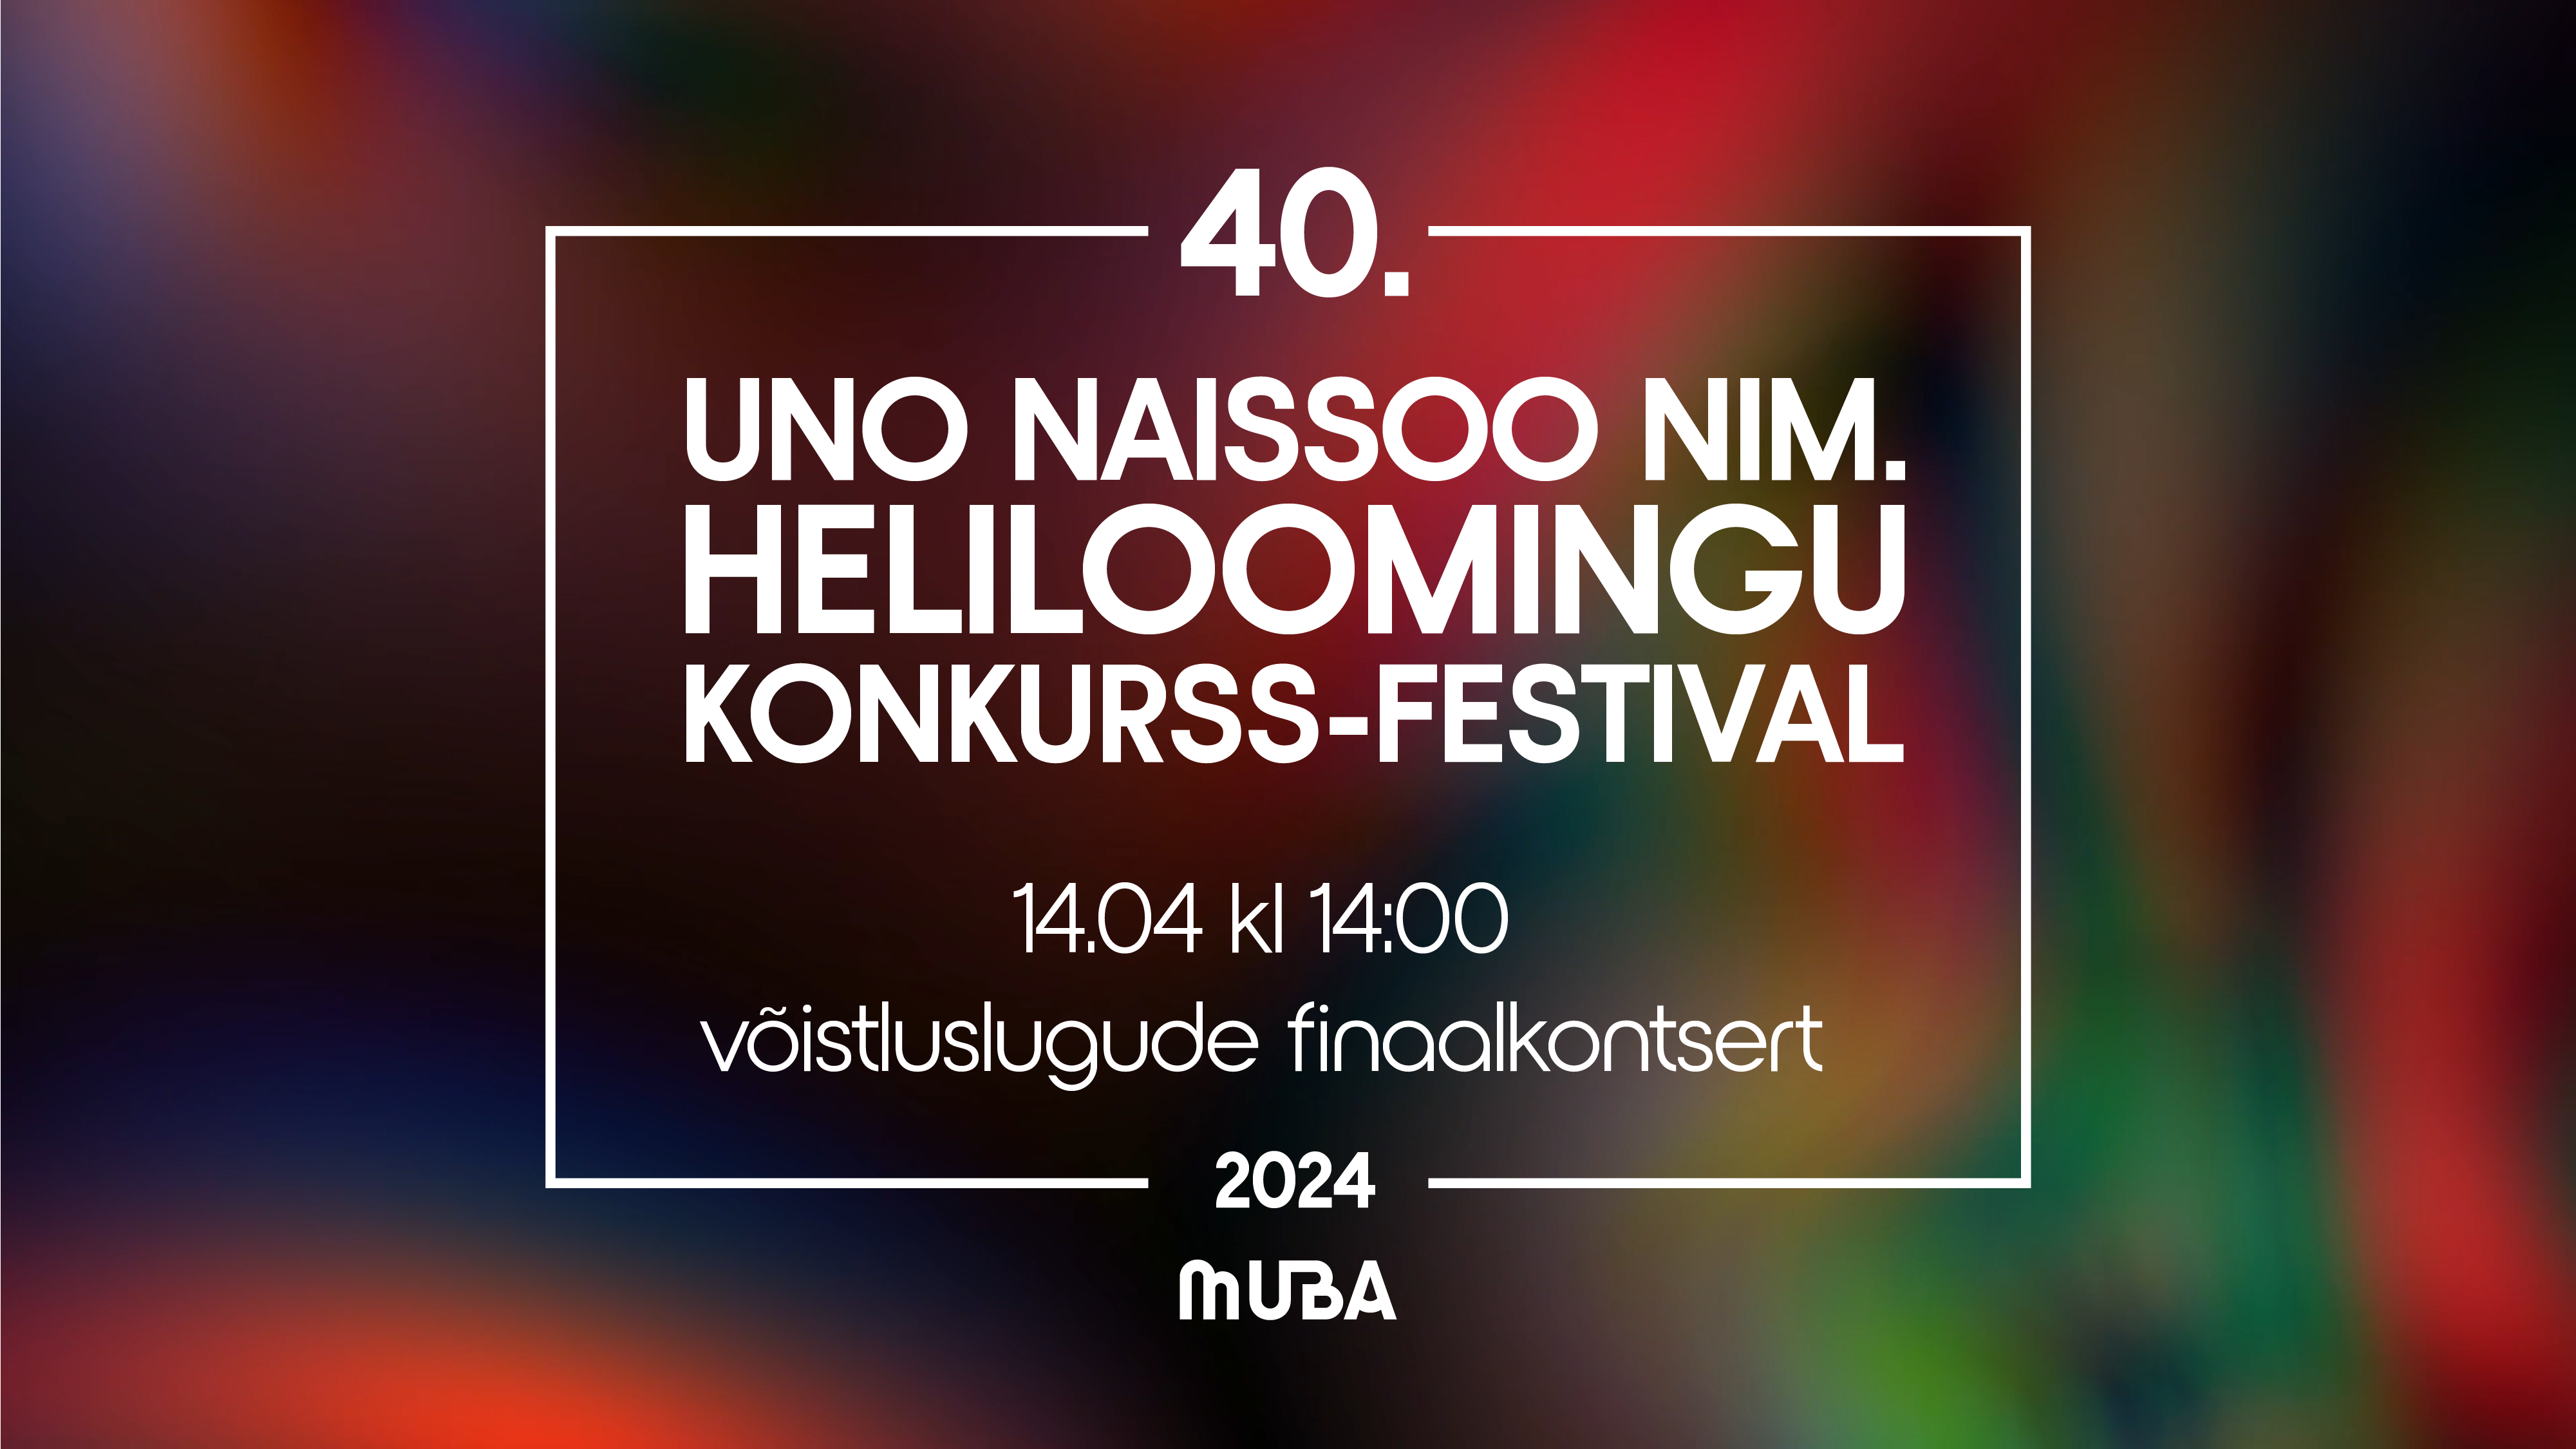 Uno Naissoo nim. heliloomingu konkurss toimus esimest korda 1983. aastal. Selle konkursi idee on ergutada noori muusikuid looma uut muusikat. Käesoleval aastal